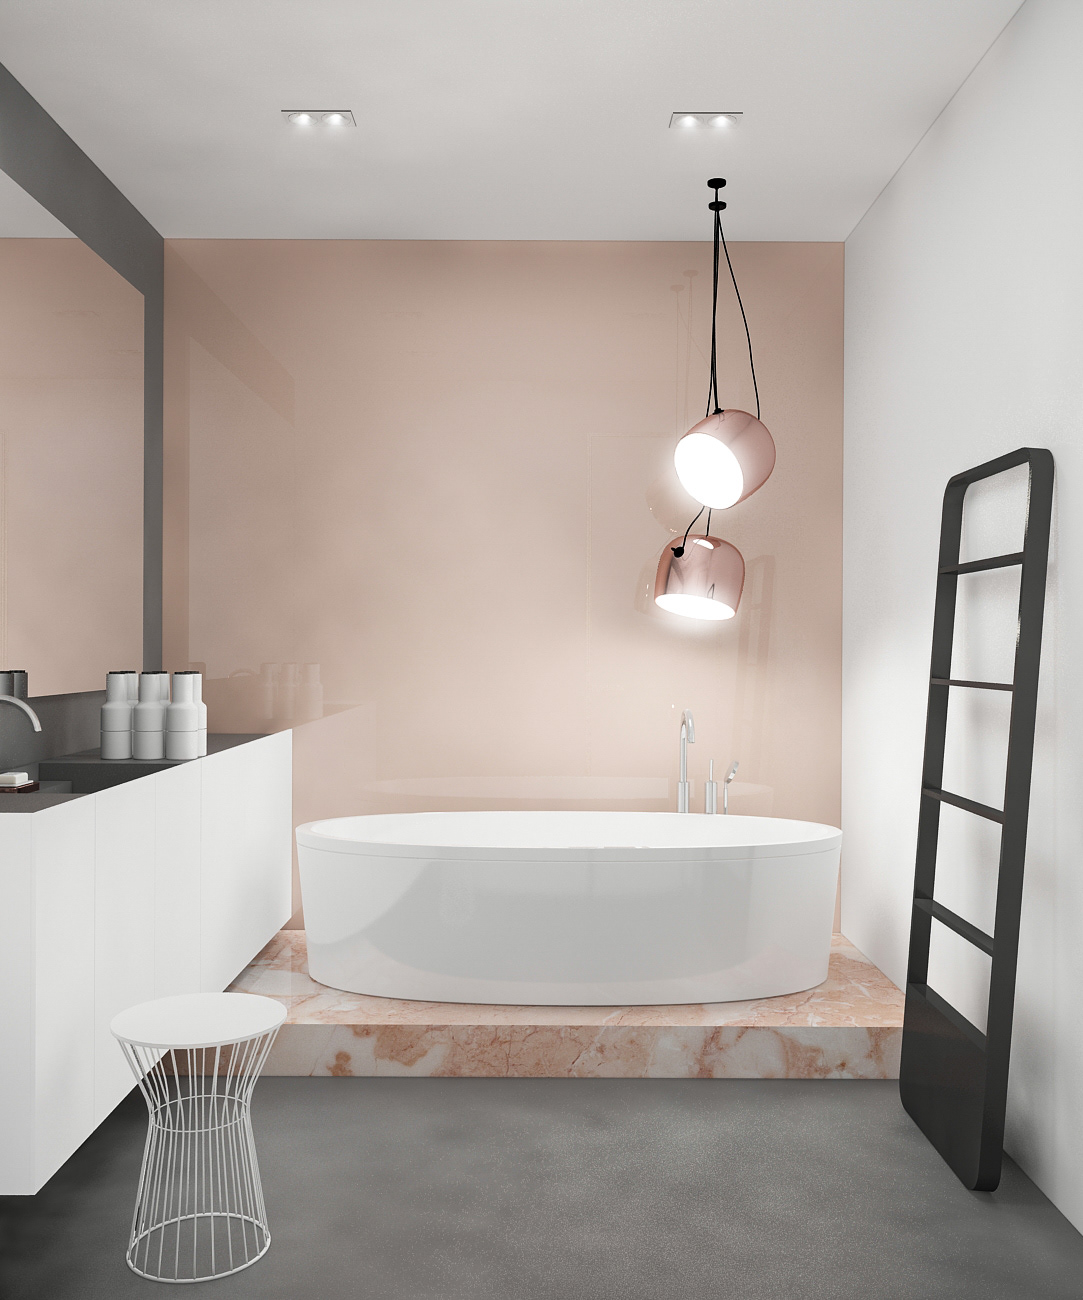 Minimal interior Pink marble bathroom lavatory hallway design interior